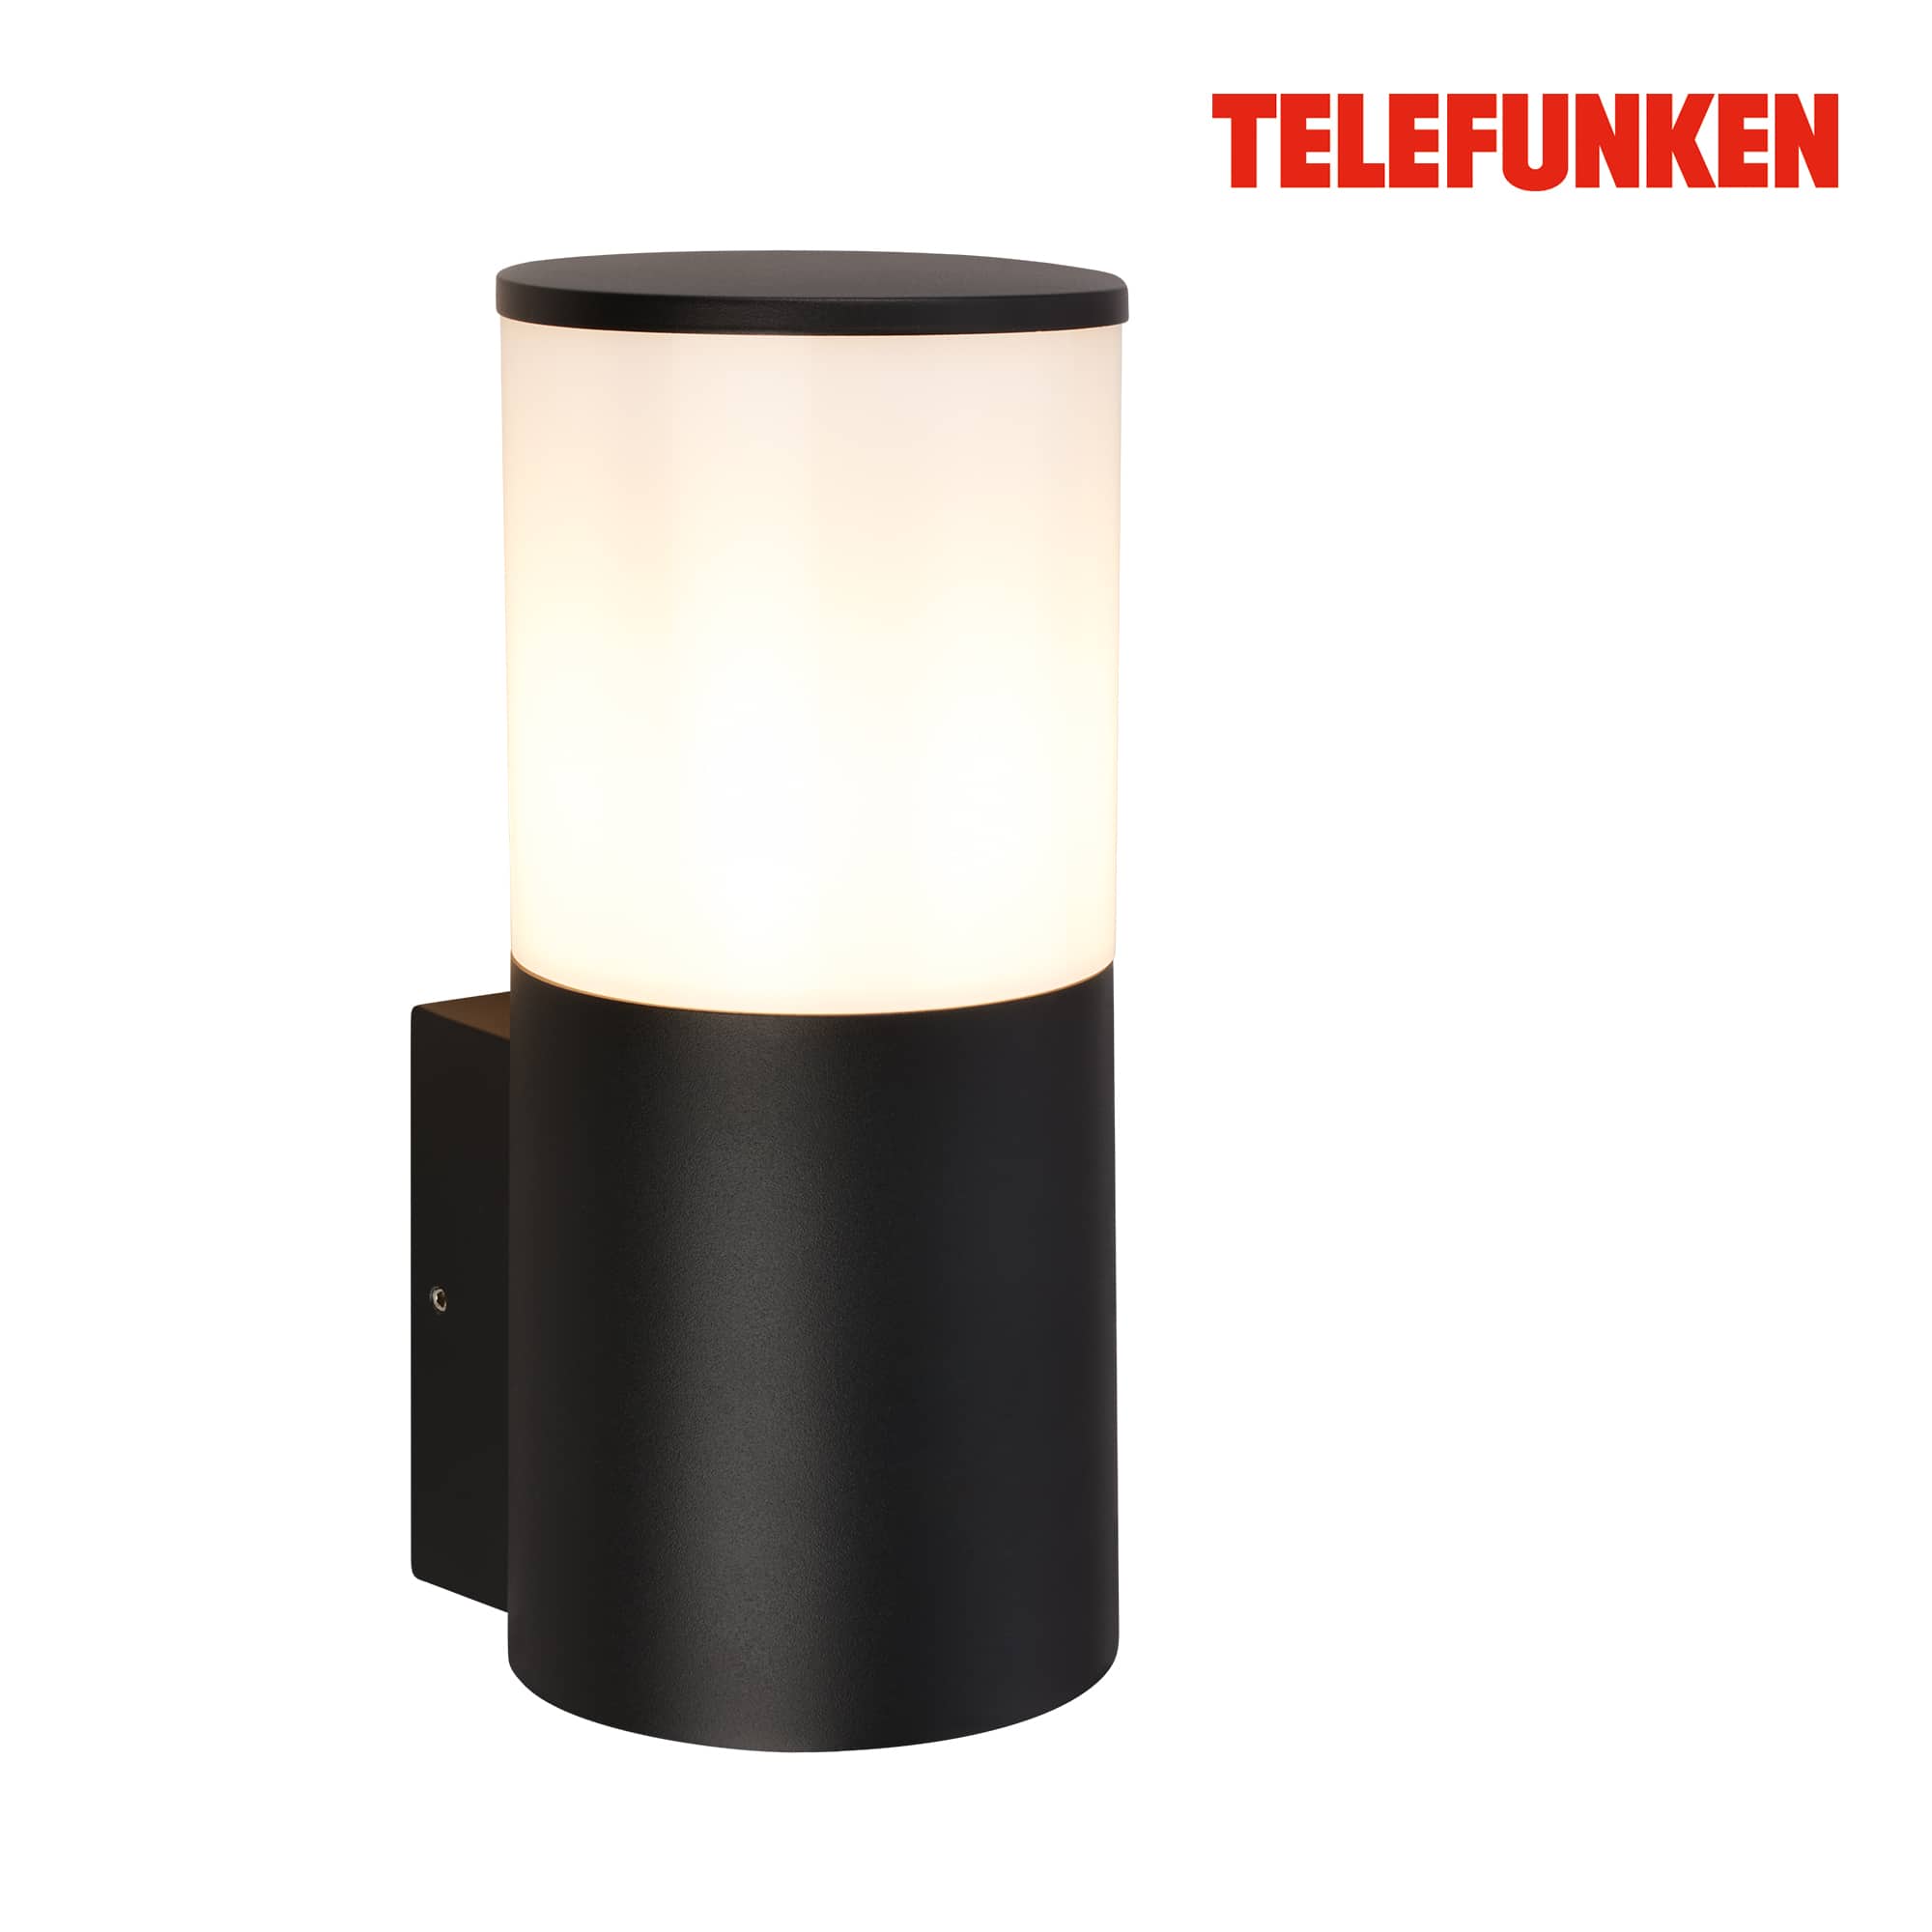 Lampada da parete Telefunken LED, protezione dagli spruzzi d'acqua e dalla polvere, On/Off